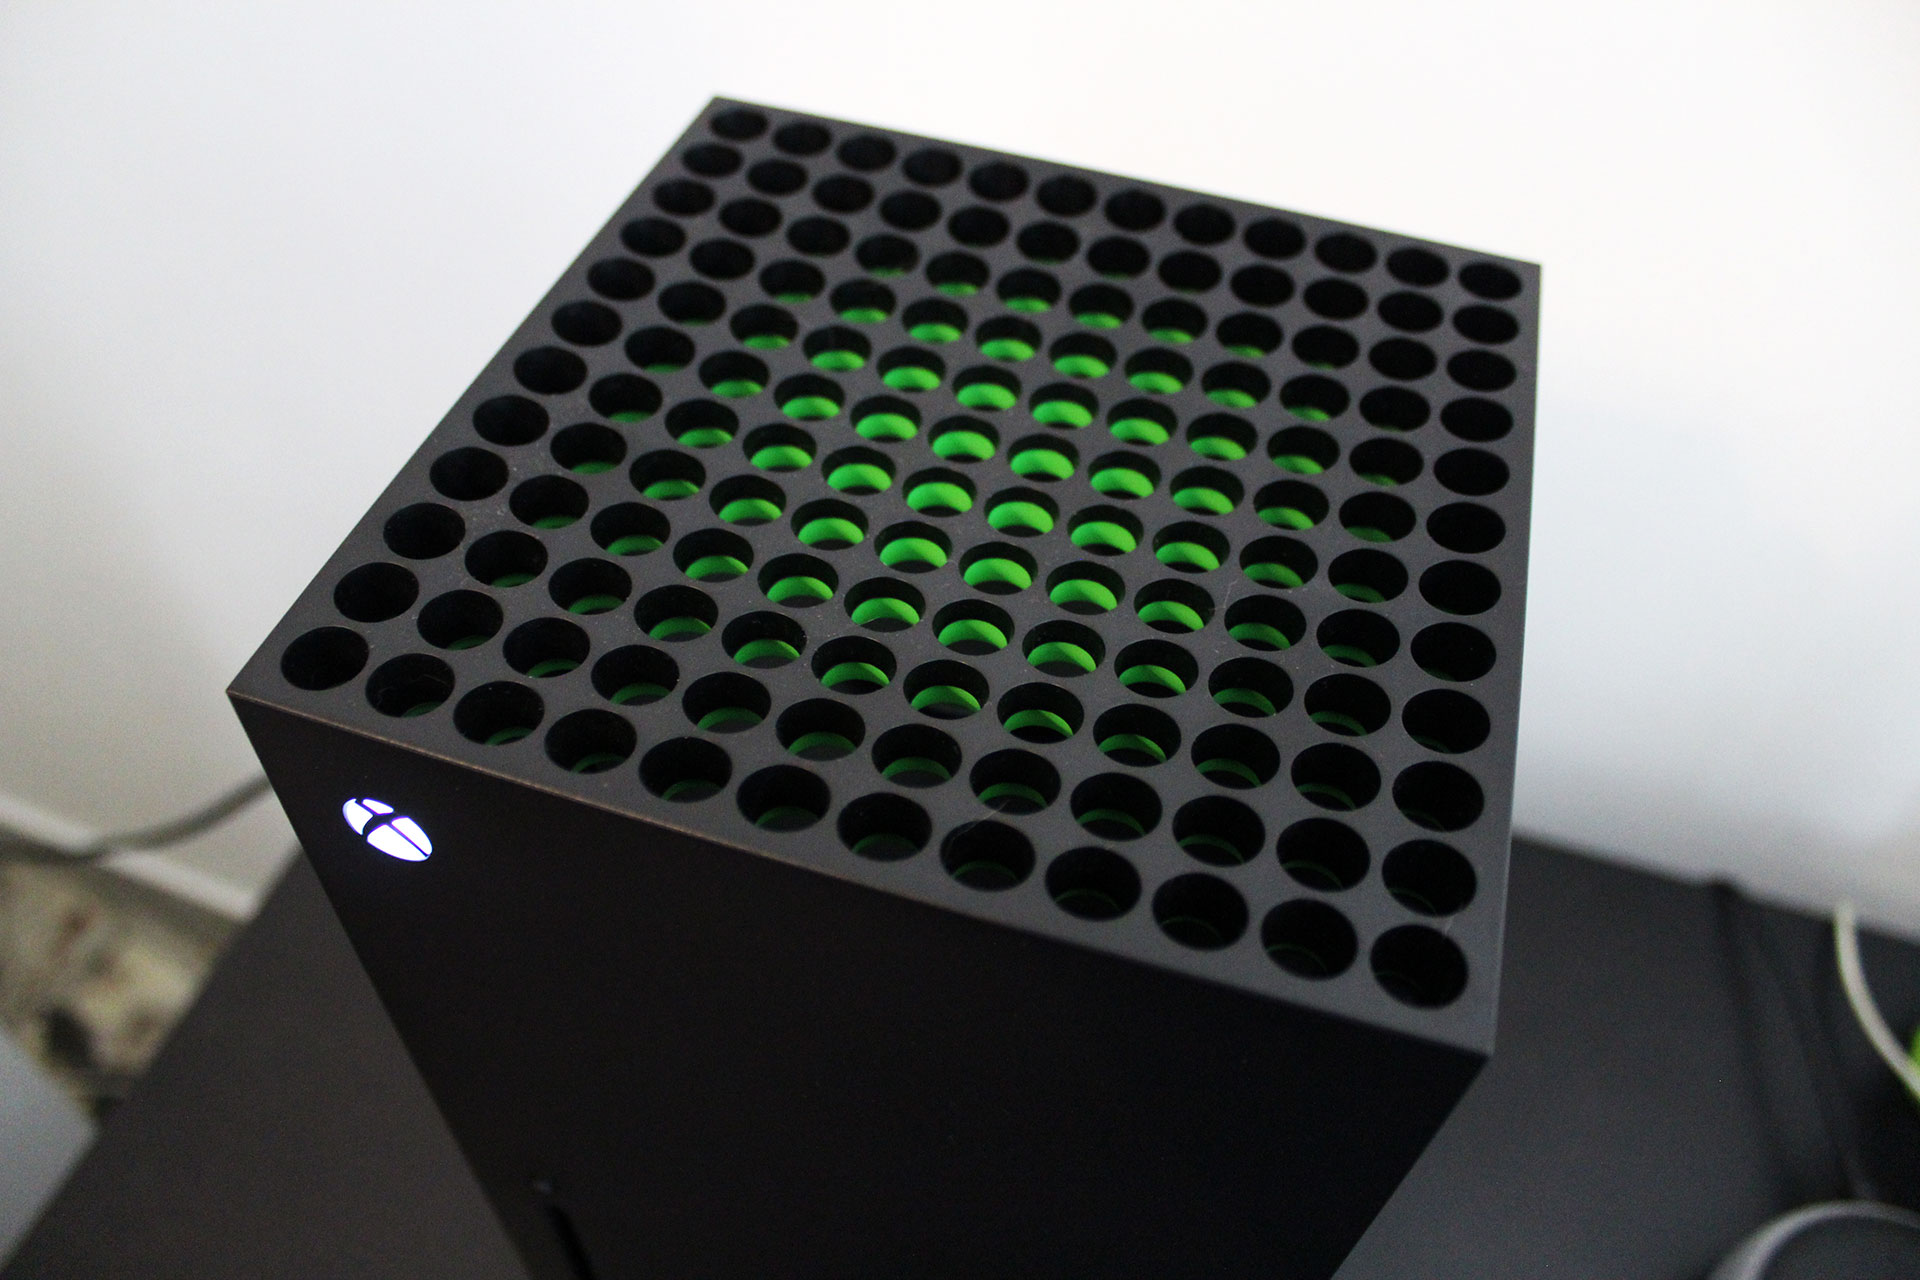  Xbox Series X